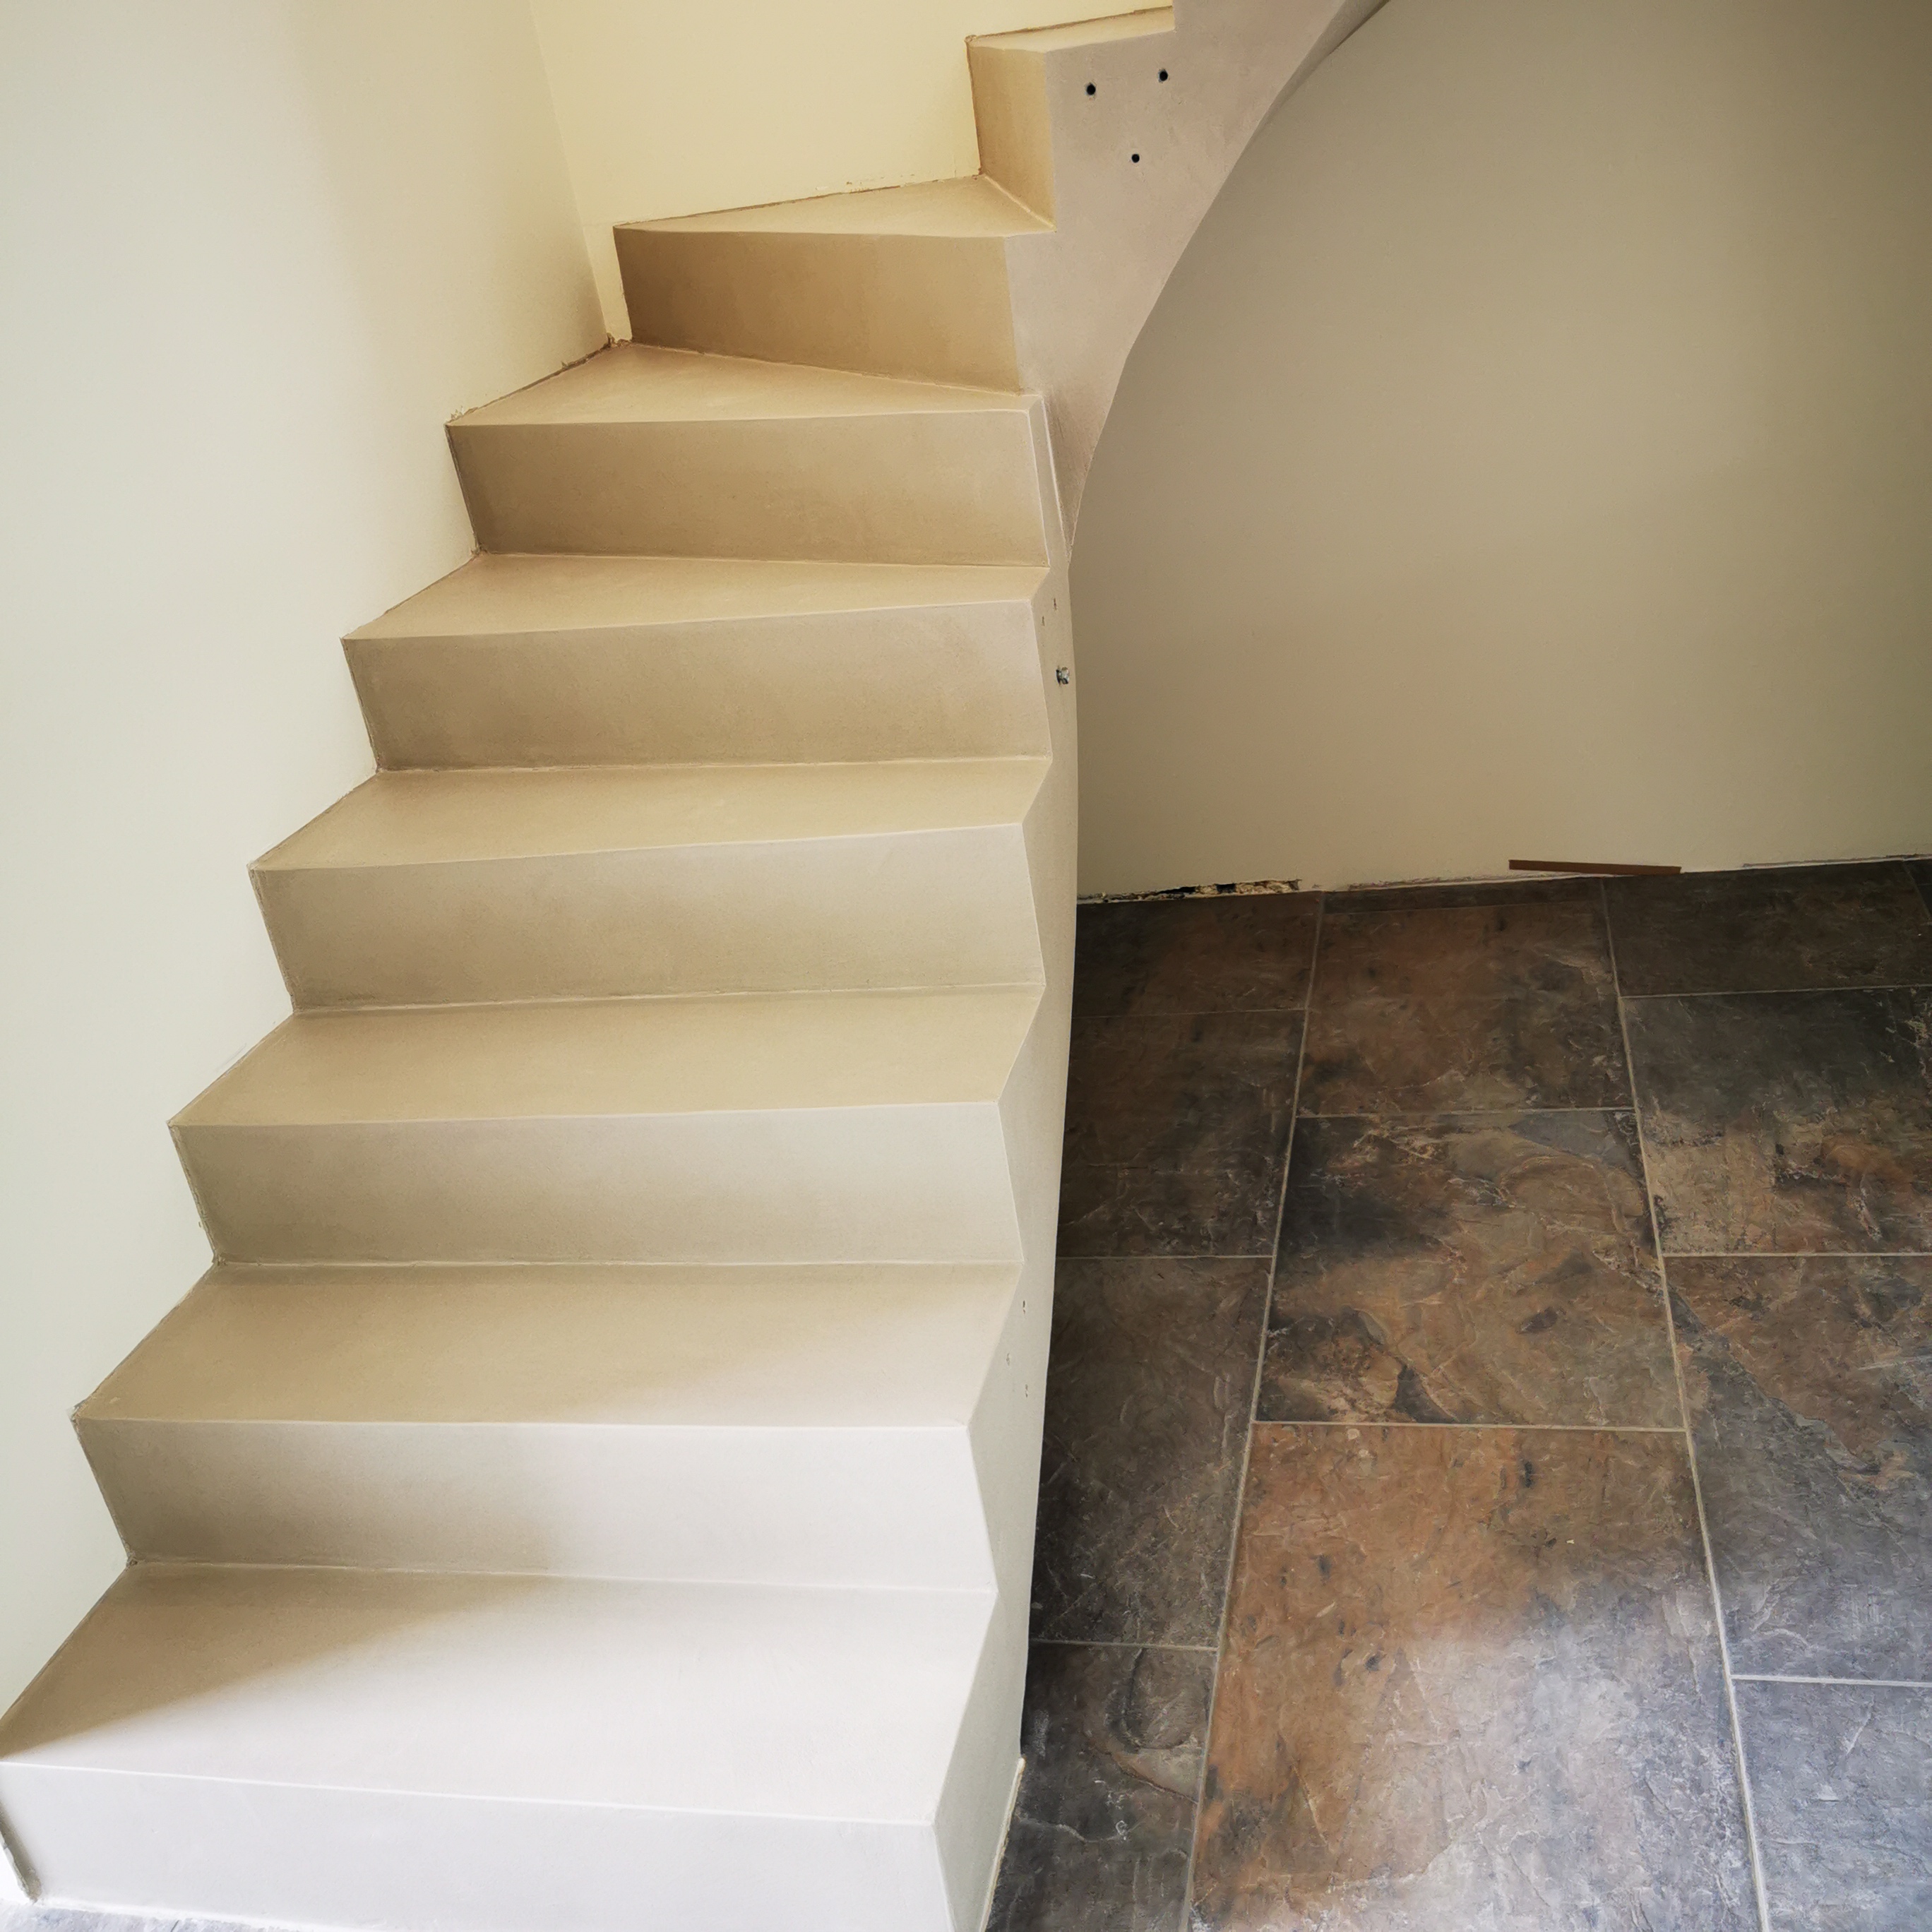 Habillage en béton ciré sur cet escalier dans une maison individuelle